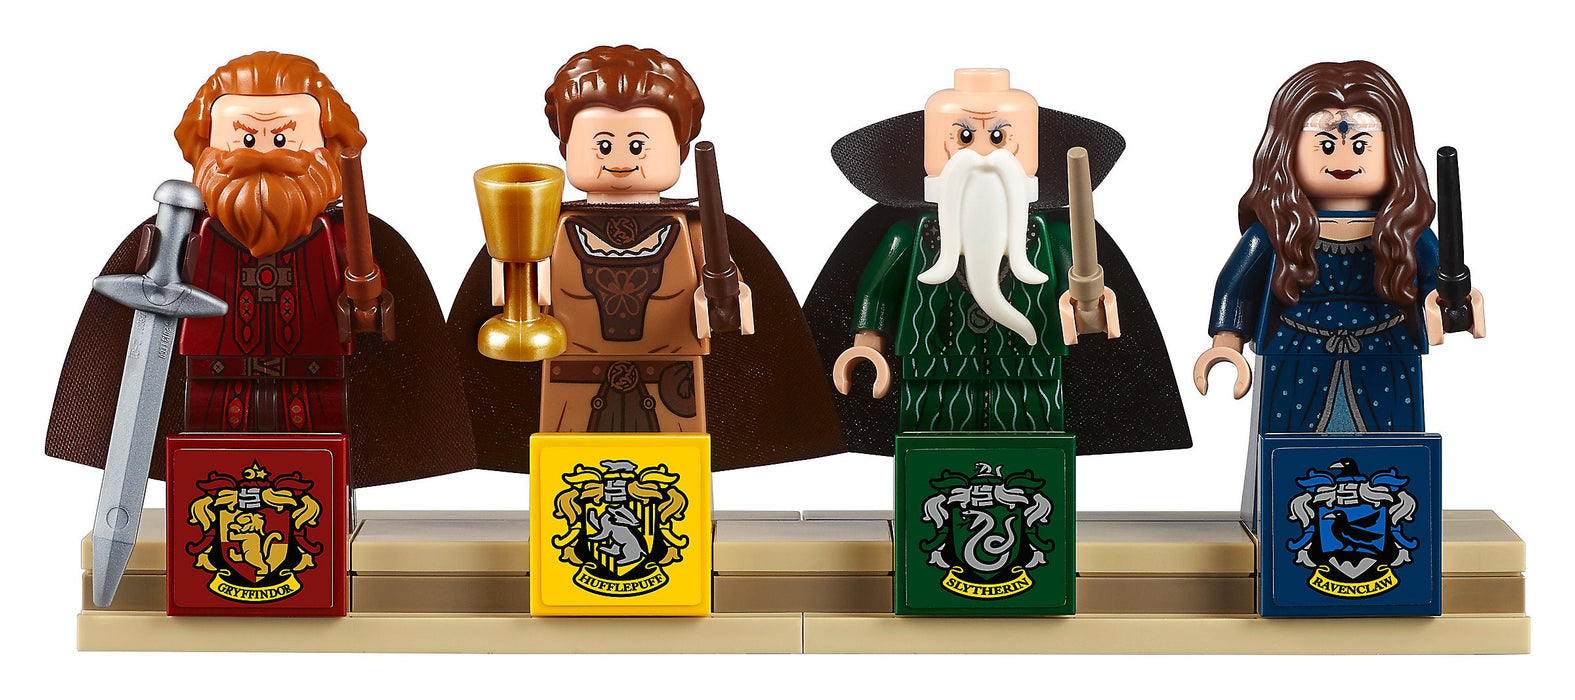 LEGO Harry Potter: Hogwarts - 6020 Piece Kit [LEGO, #7 —